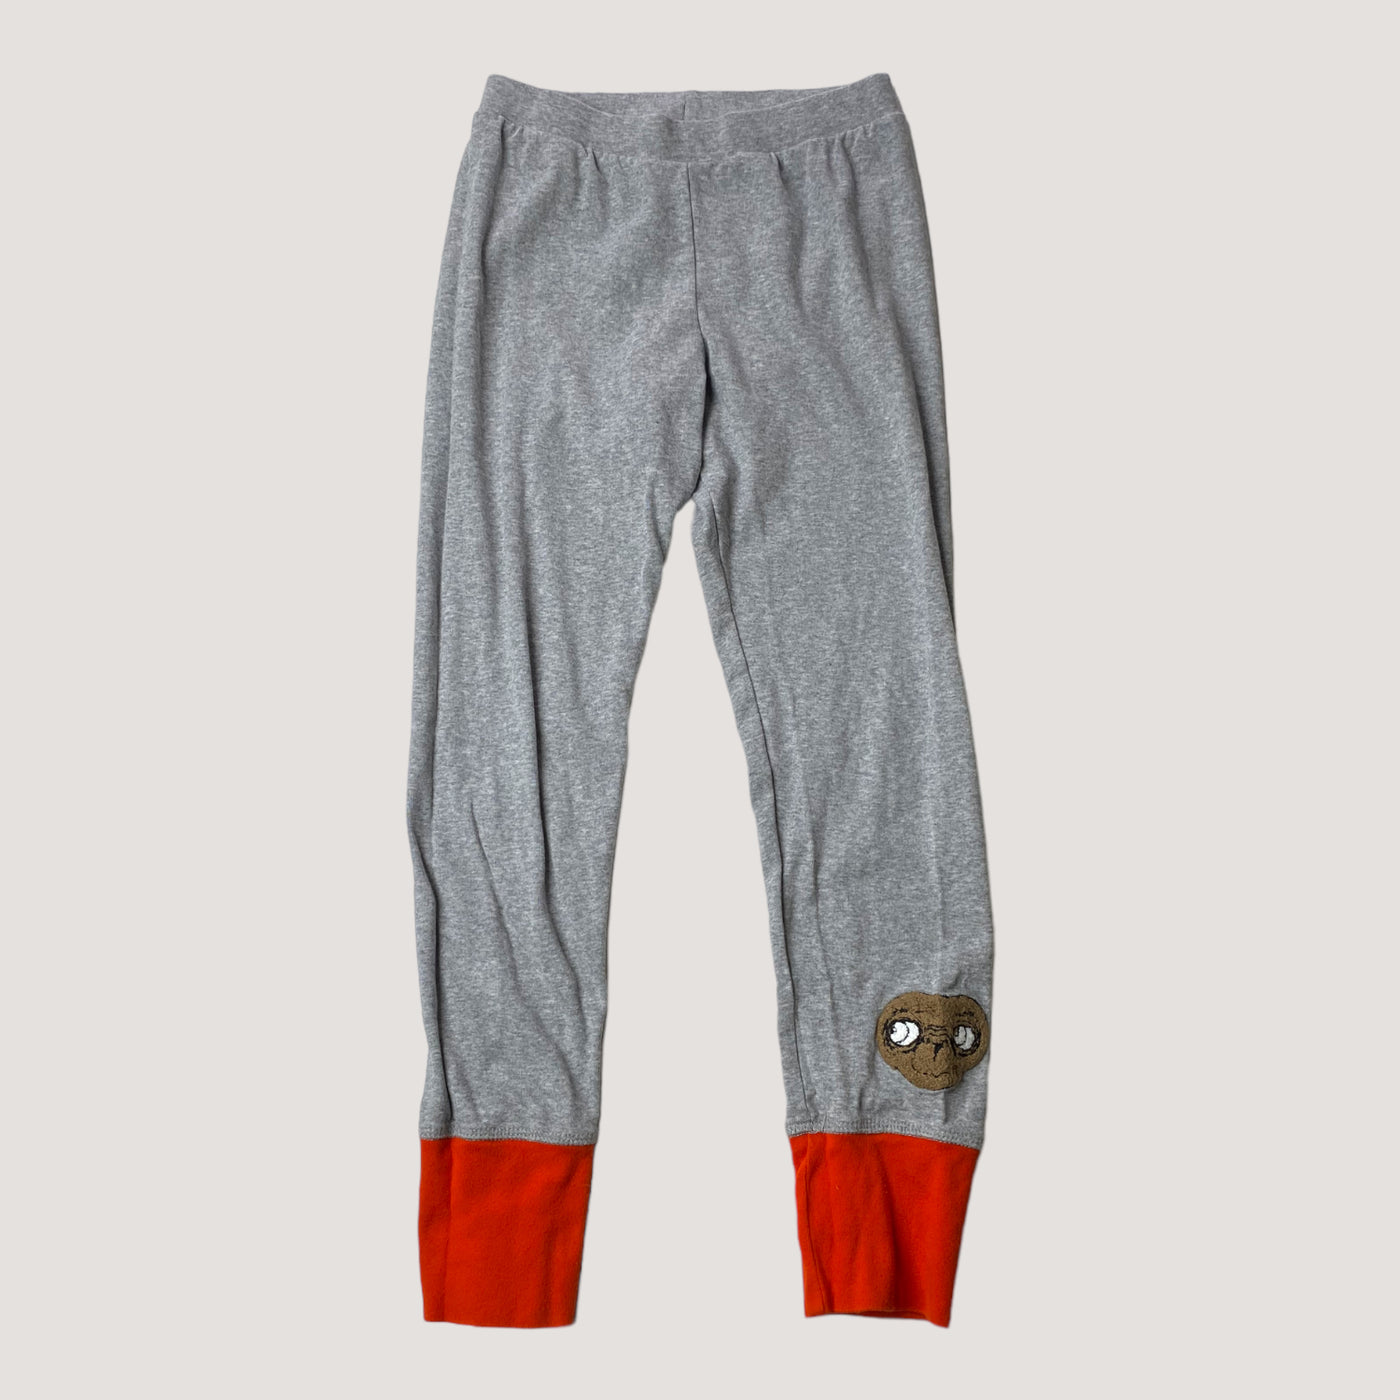 Mini Rodini sweat pants, E.T. | 140/146cm